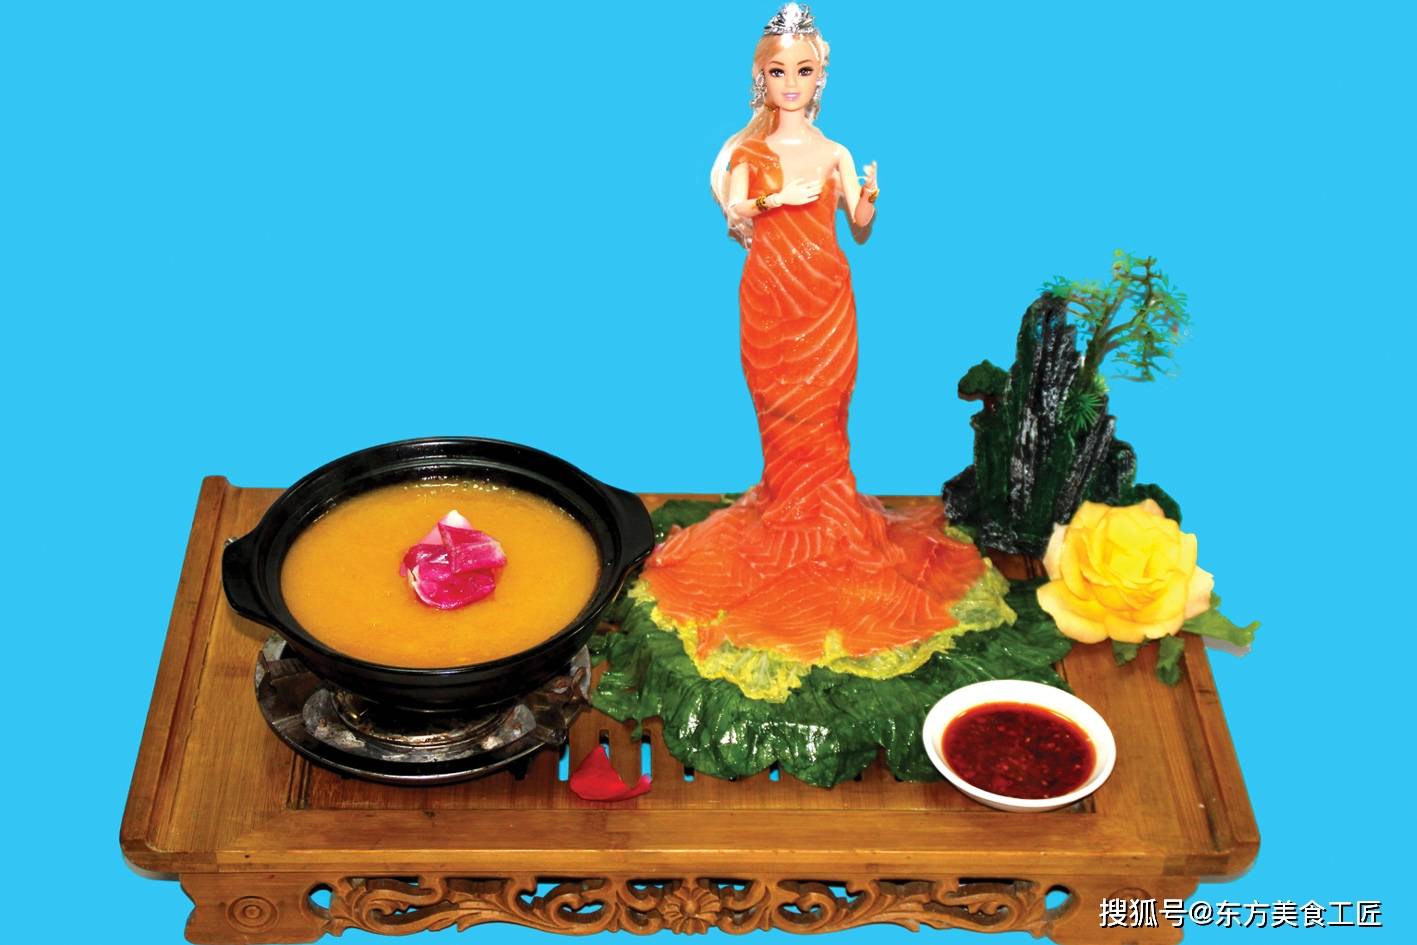 杨学海 中国烹饪大师 川菜烹饪名师 中华美食工匠